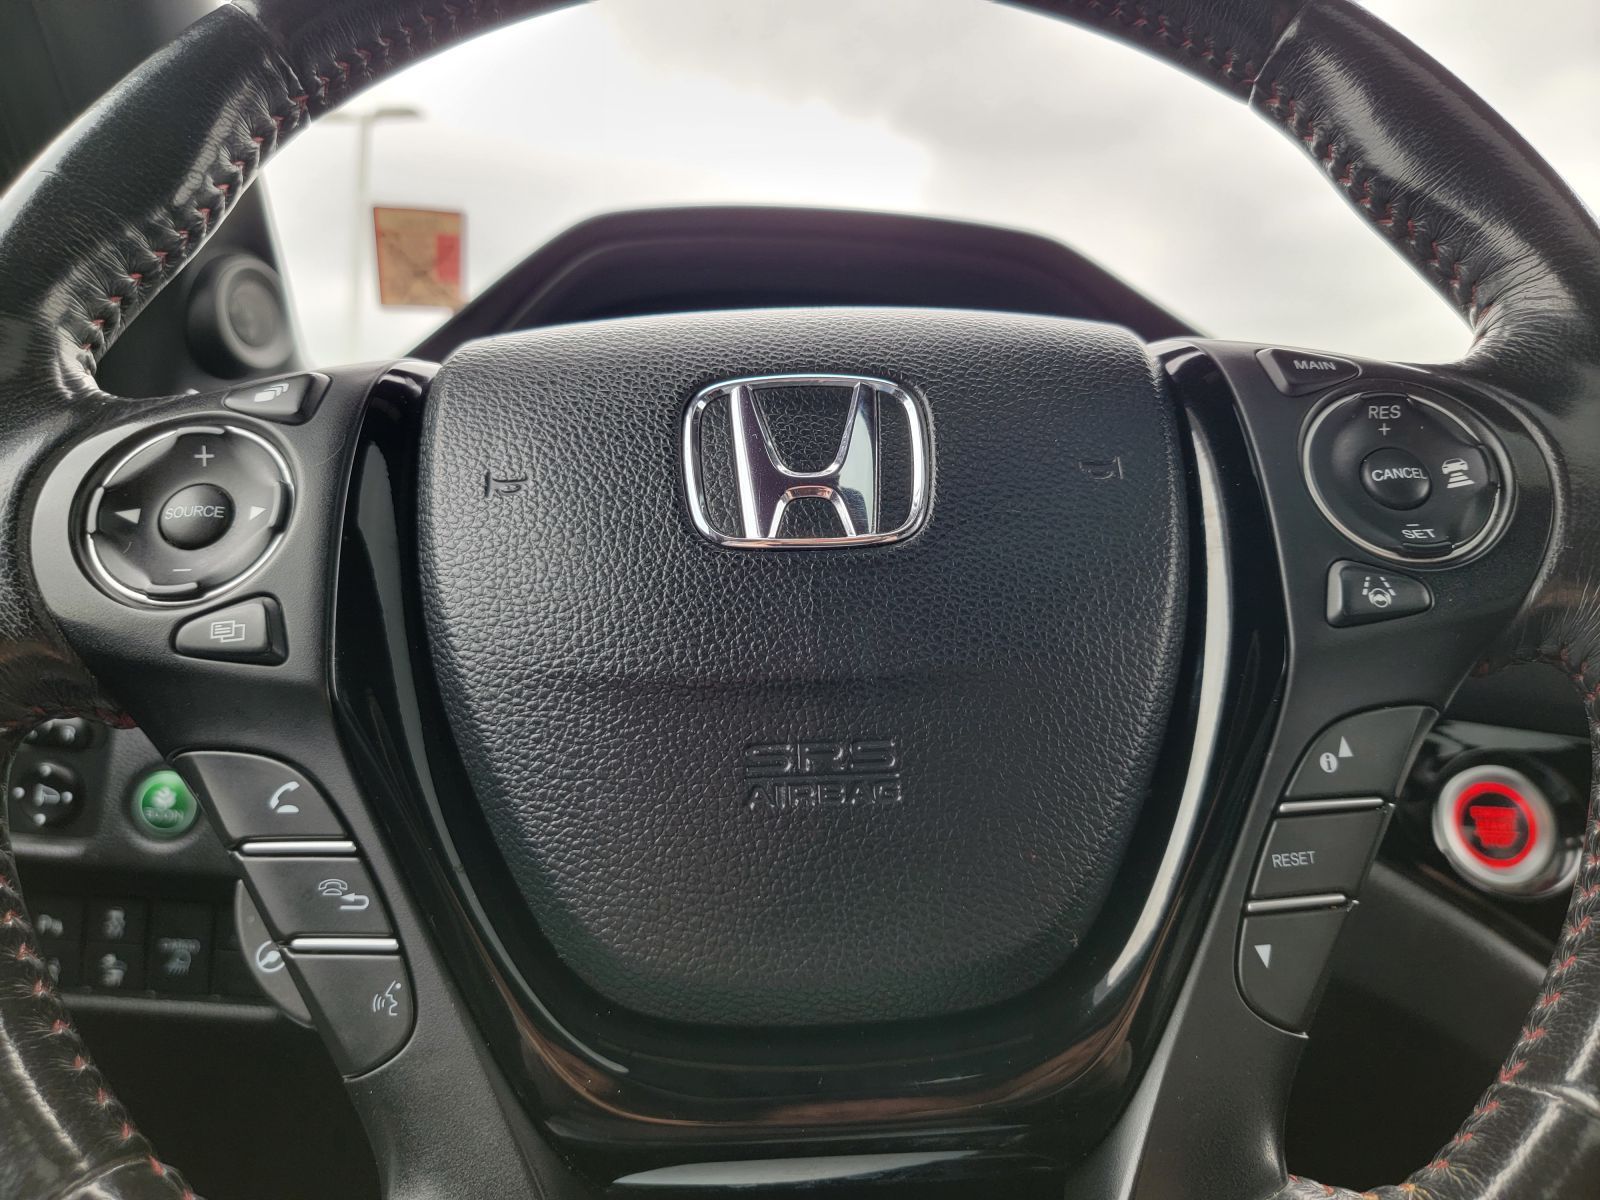 Used, 2018 Honda Ridgeline Black Edition, Black, P0461-21